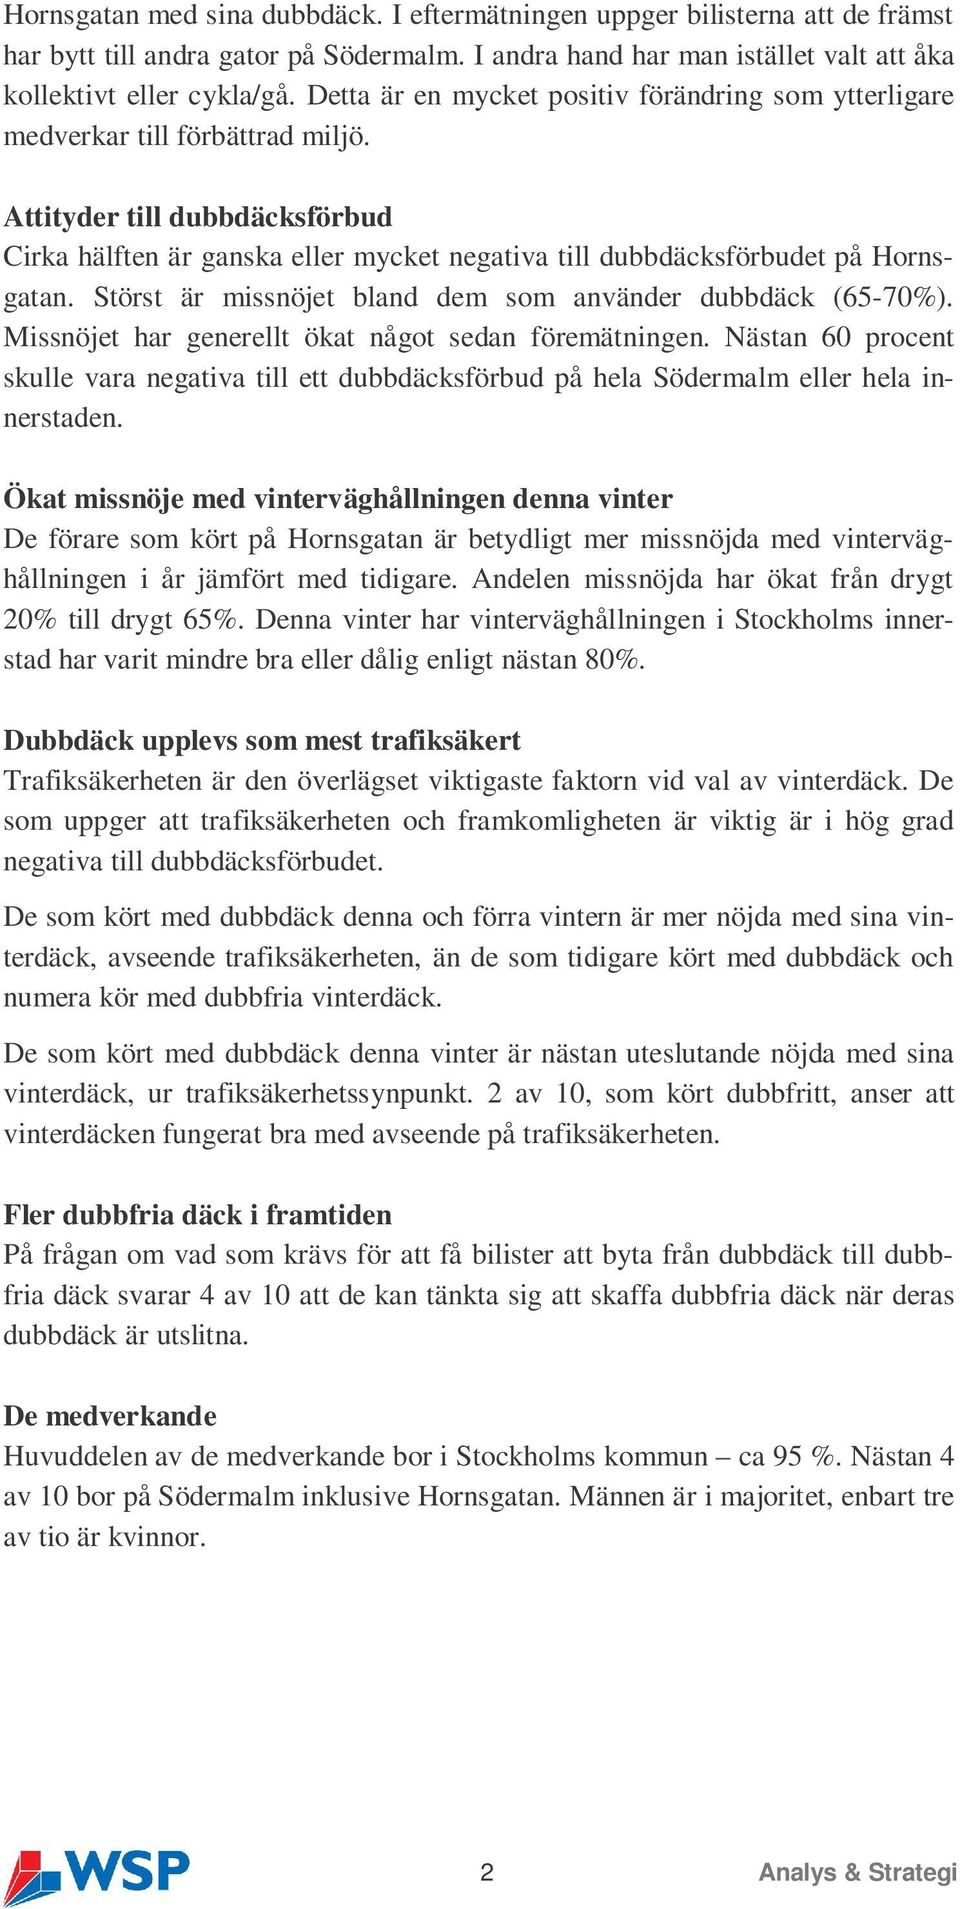 Attityder till dubbdäcksförbud Cirka hälften är ganska eller mycket negativa till dubbdäcksförbudet på Hornsgatan. Störst är missnöjet bland dem som använder dubbdäck (65-70%).